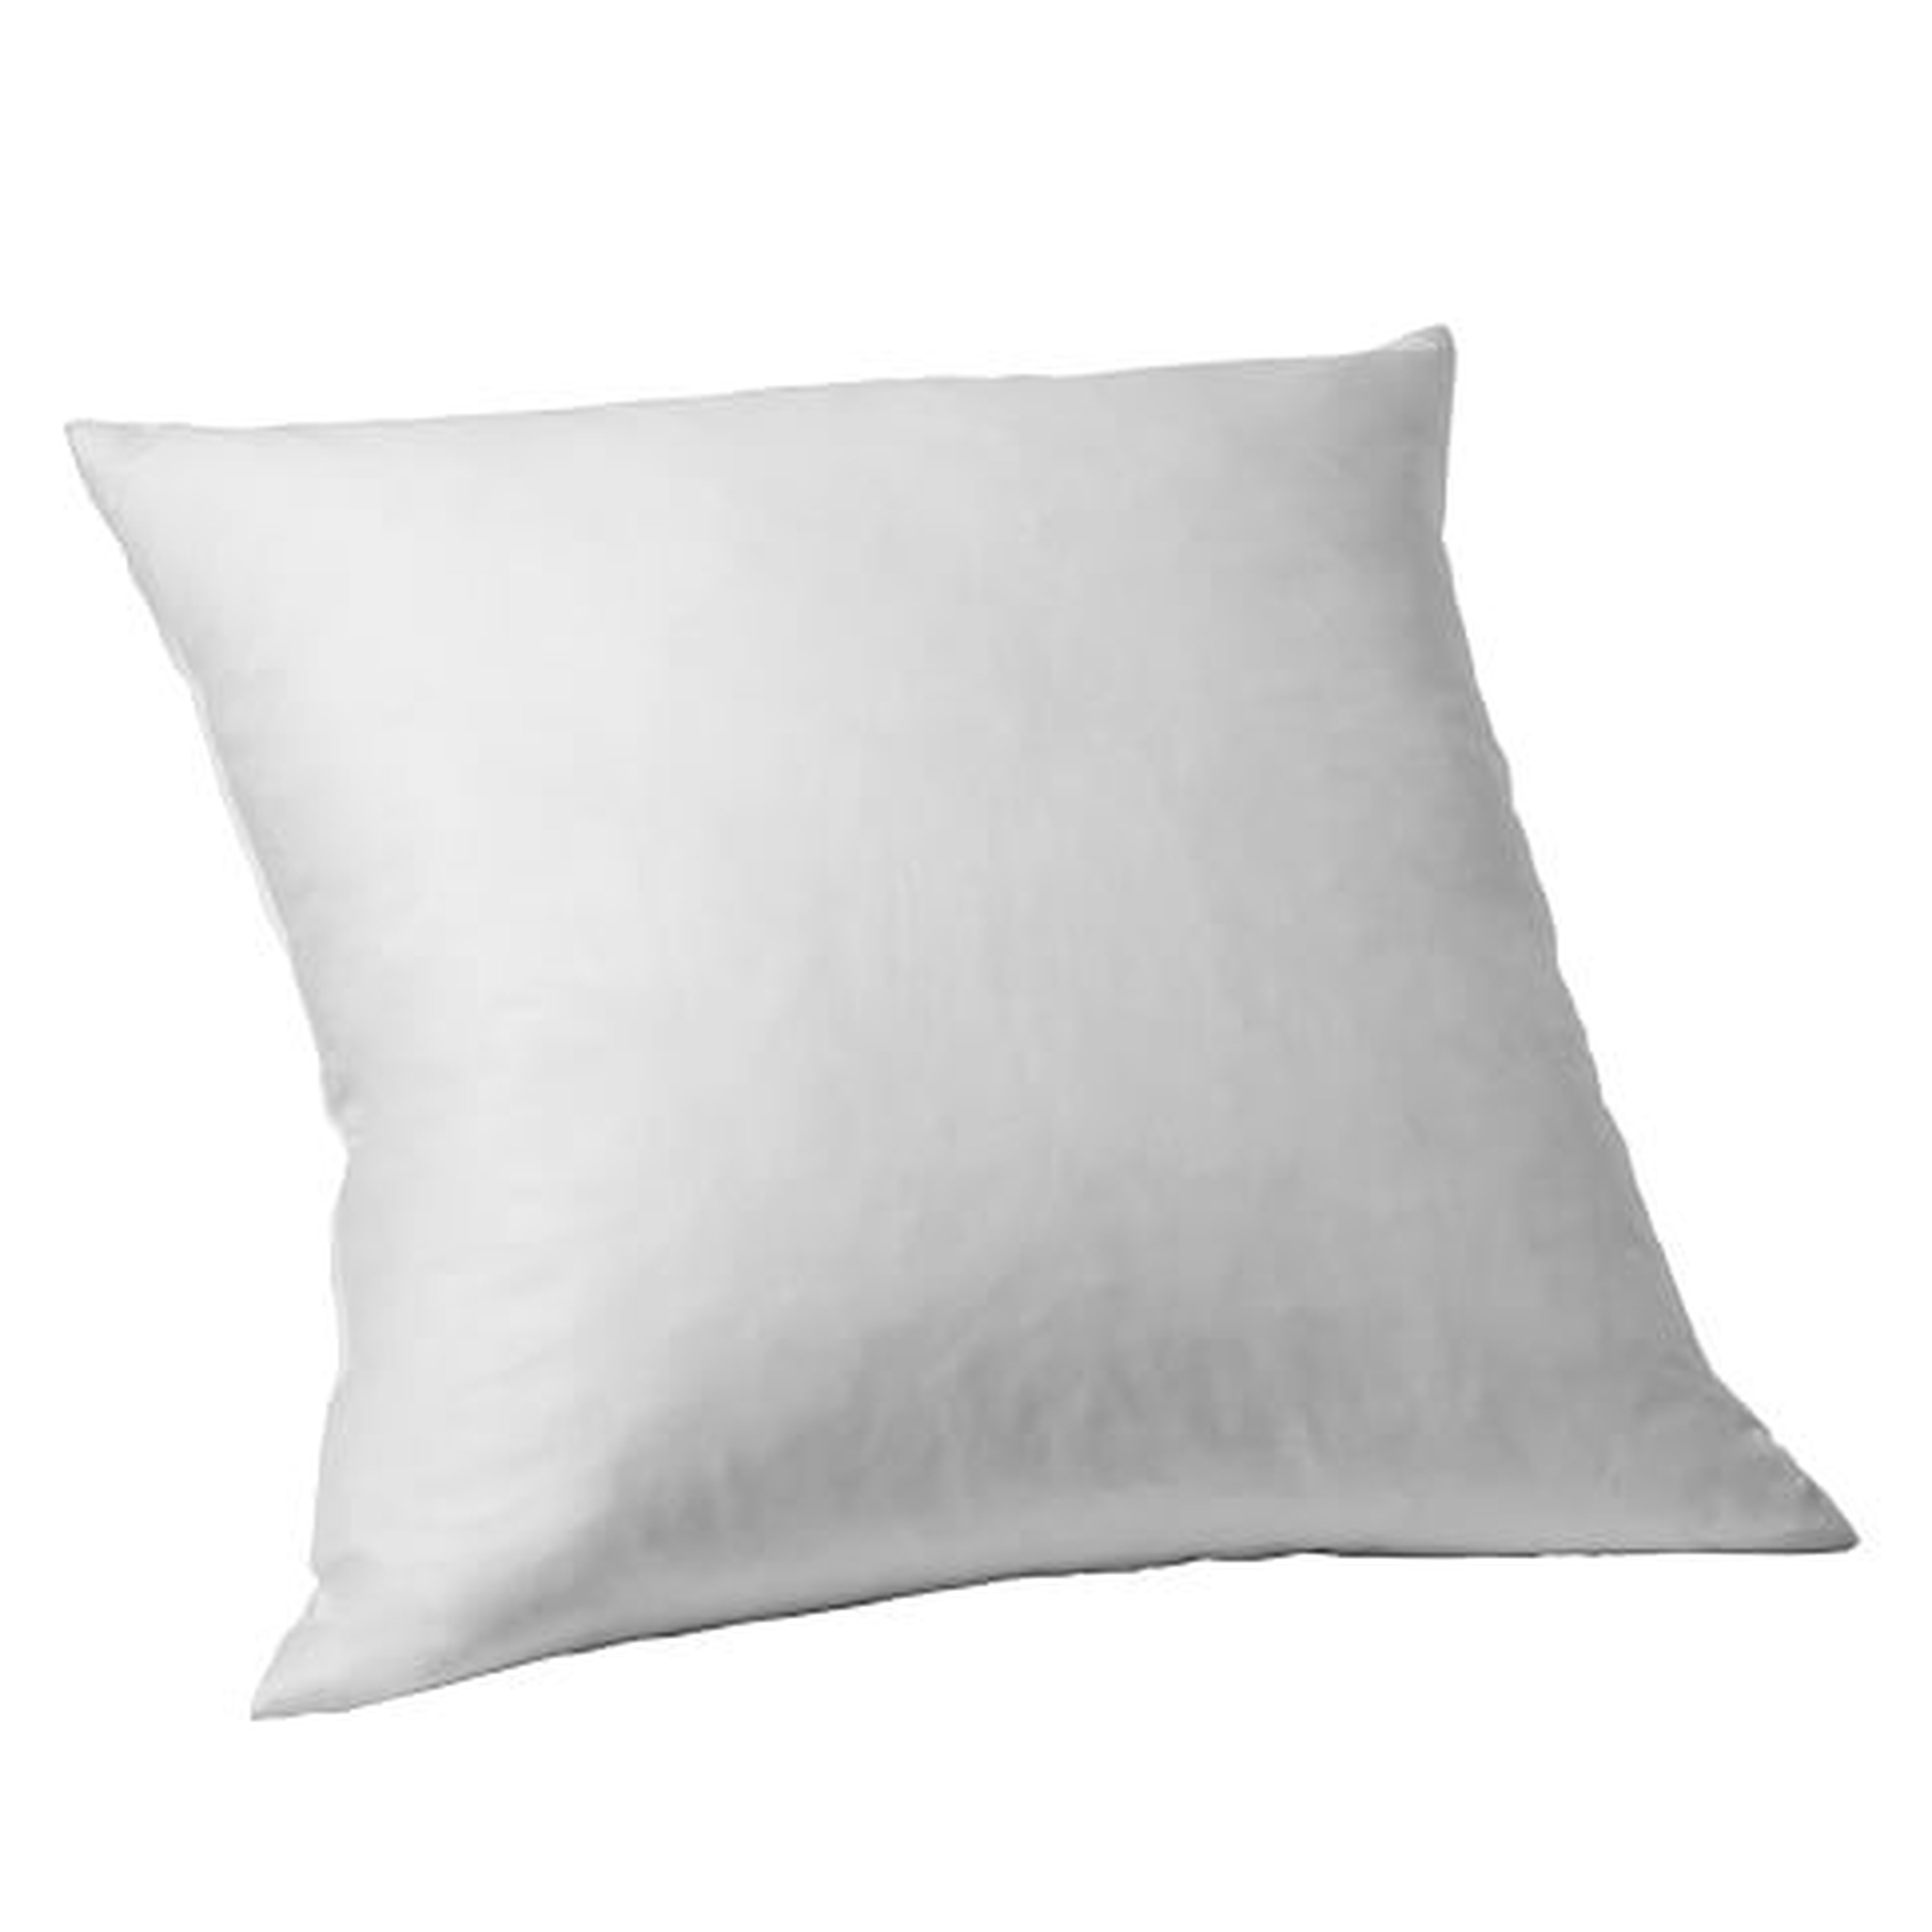 Decorative Pillow Insert â€“ 24"sq. - West Elm